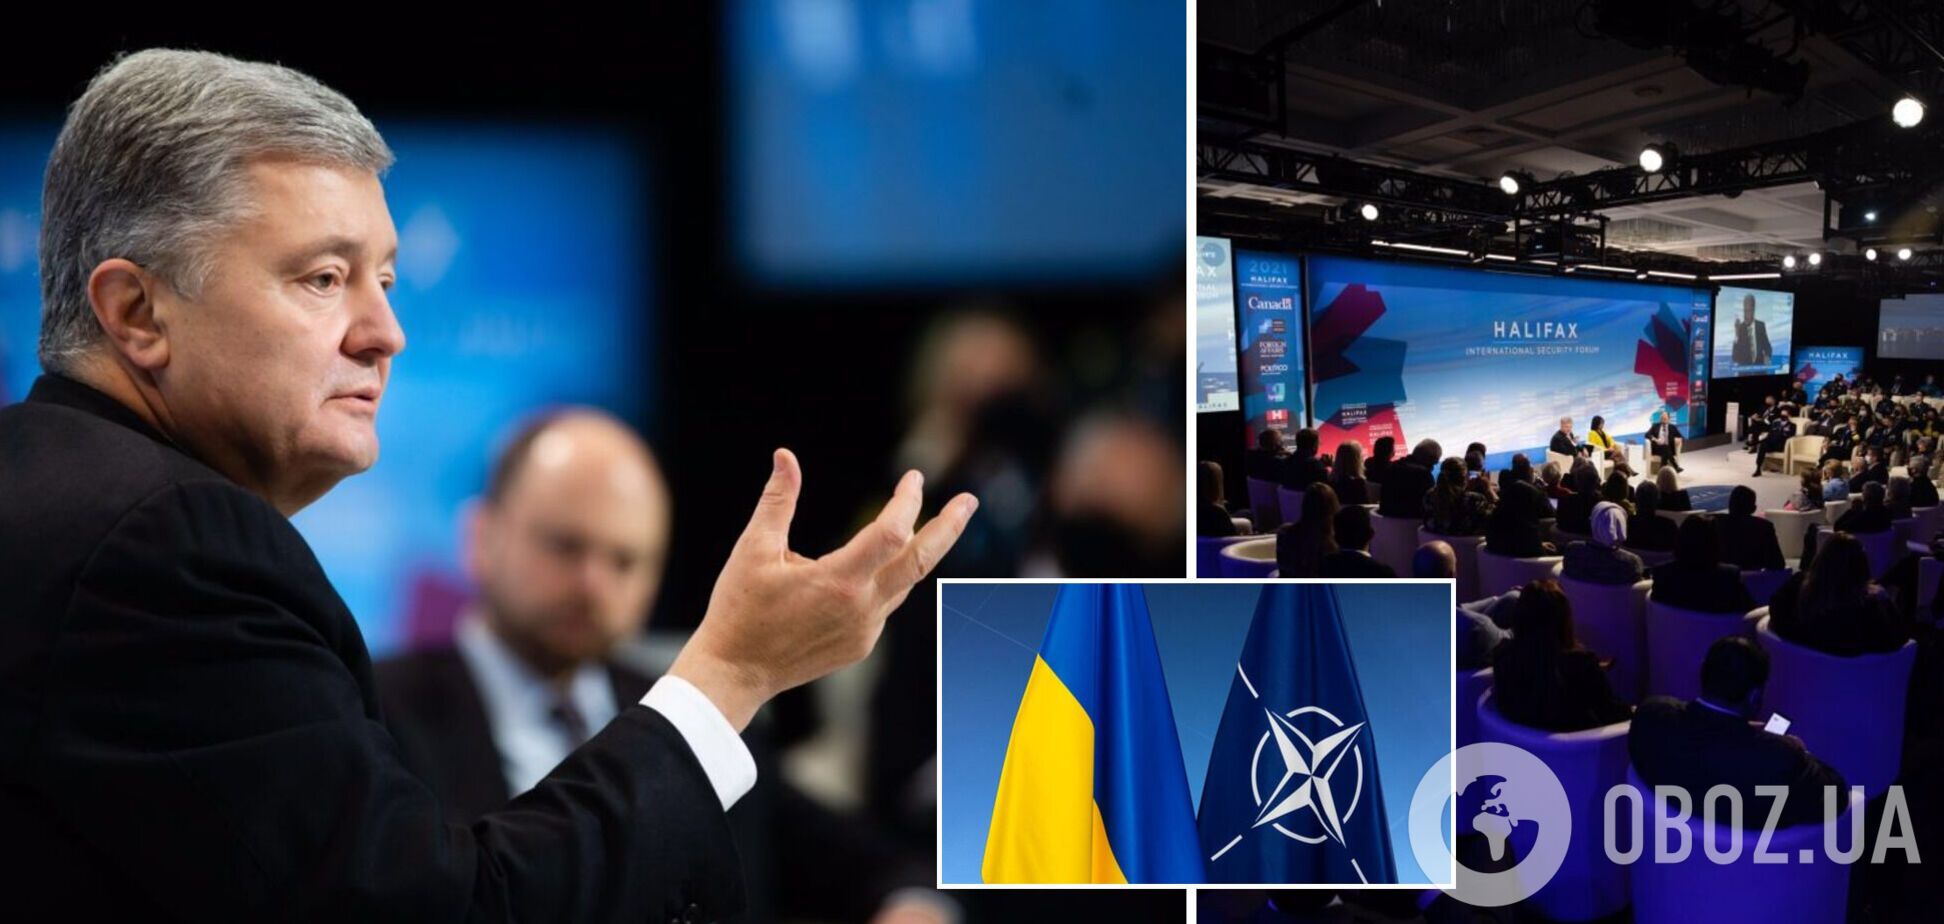 Порошенко на конференции в Галифаксе призвал Запад предоставить Украине ПДЧ в 2022 году